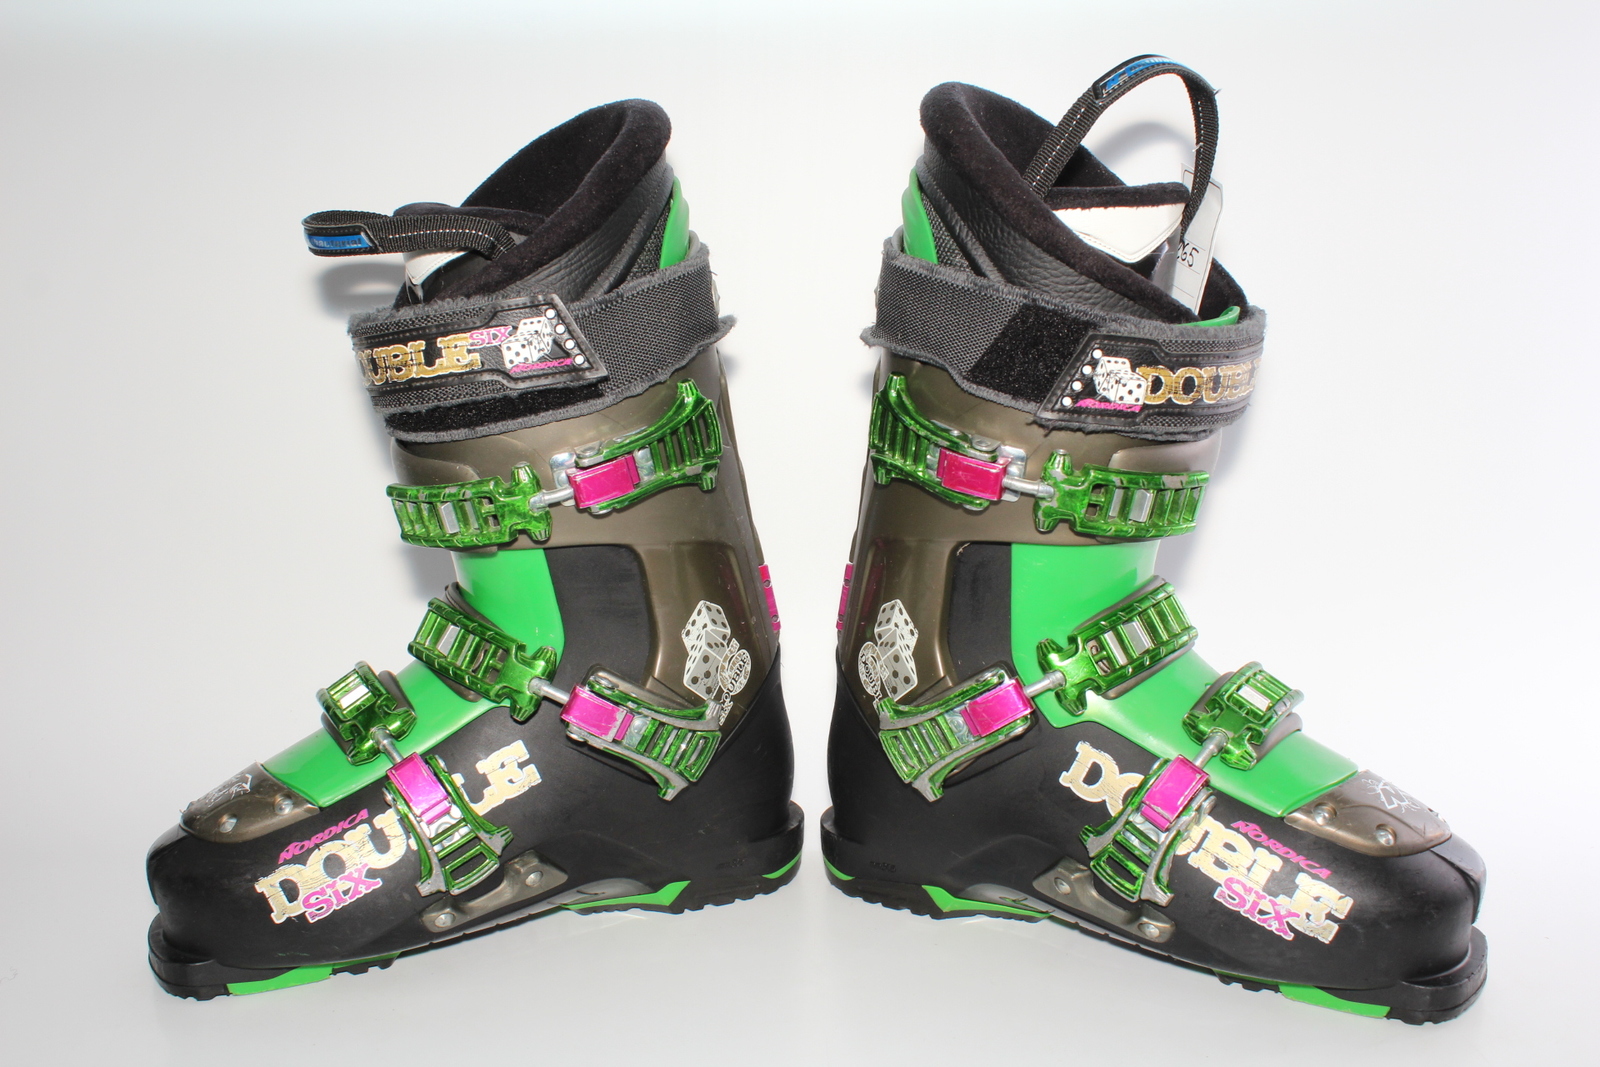 Lyžařské boty Nordica Double six vel. EU41 flexe 100